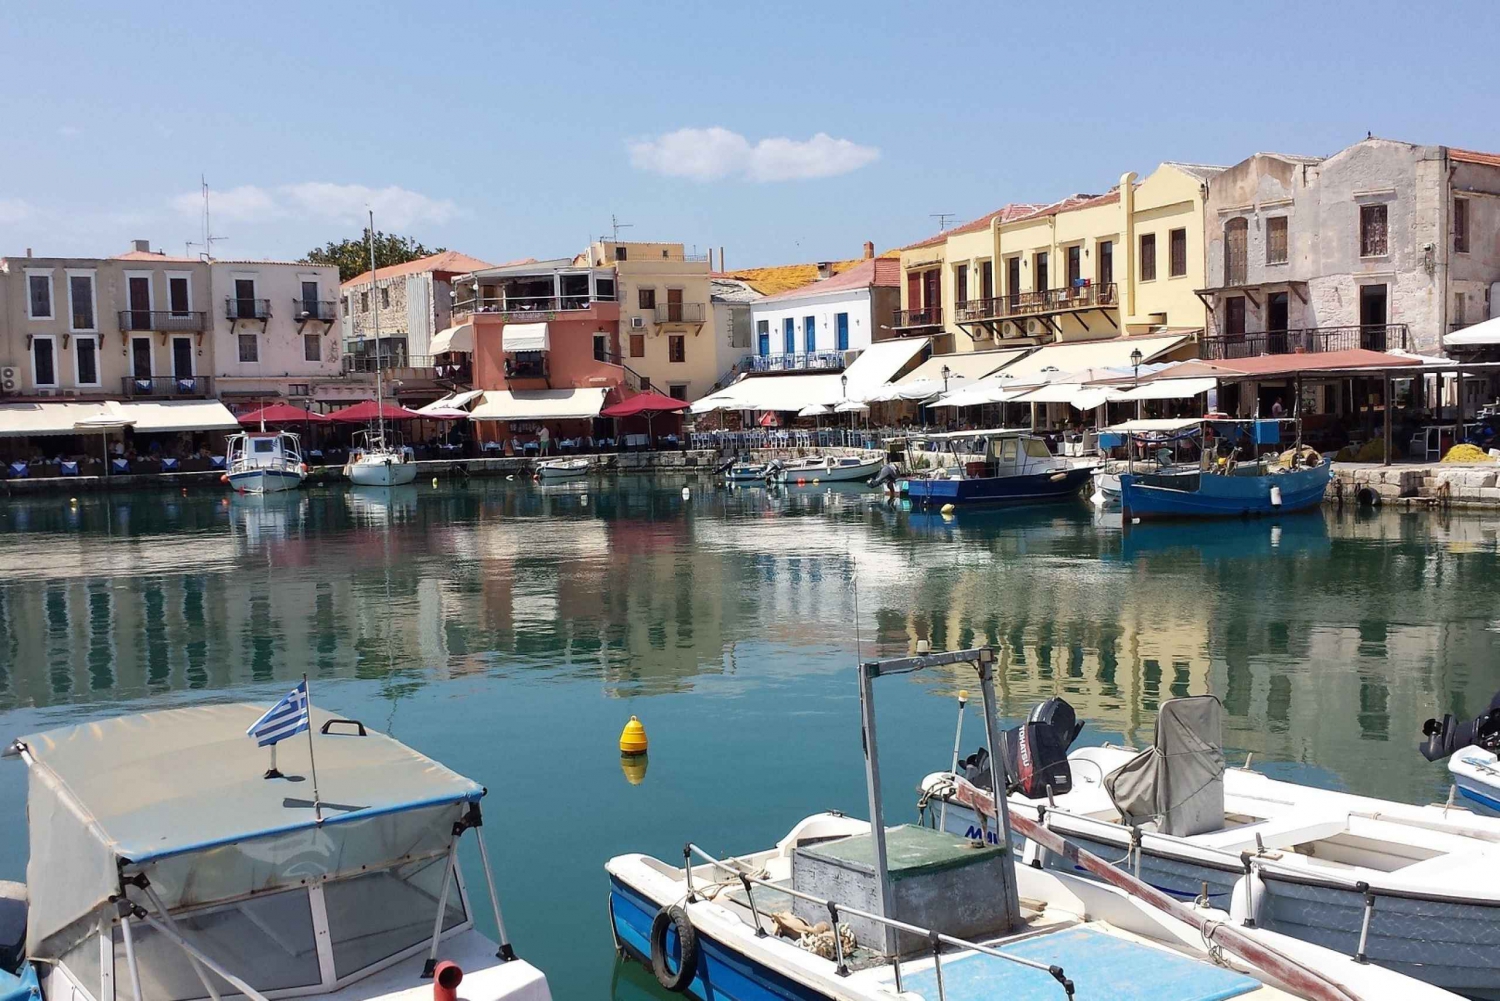 Kreta: Rethimno, Chania i wycieczka nad jezioro Kournas